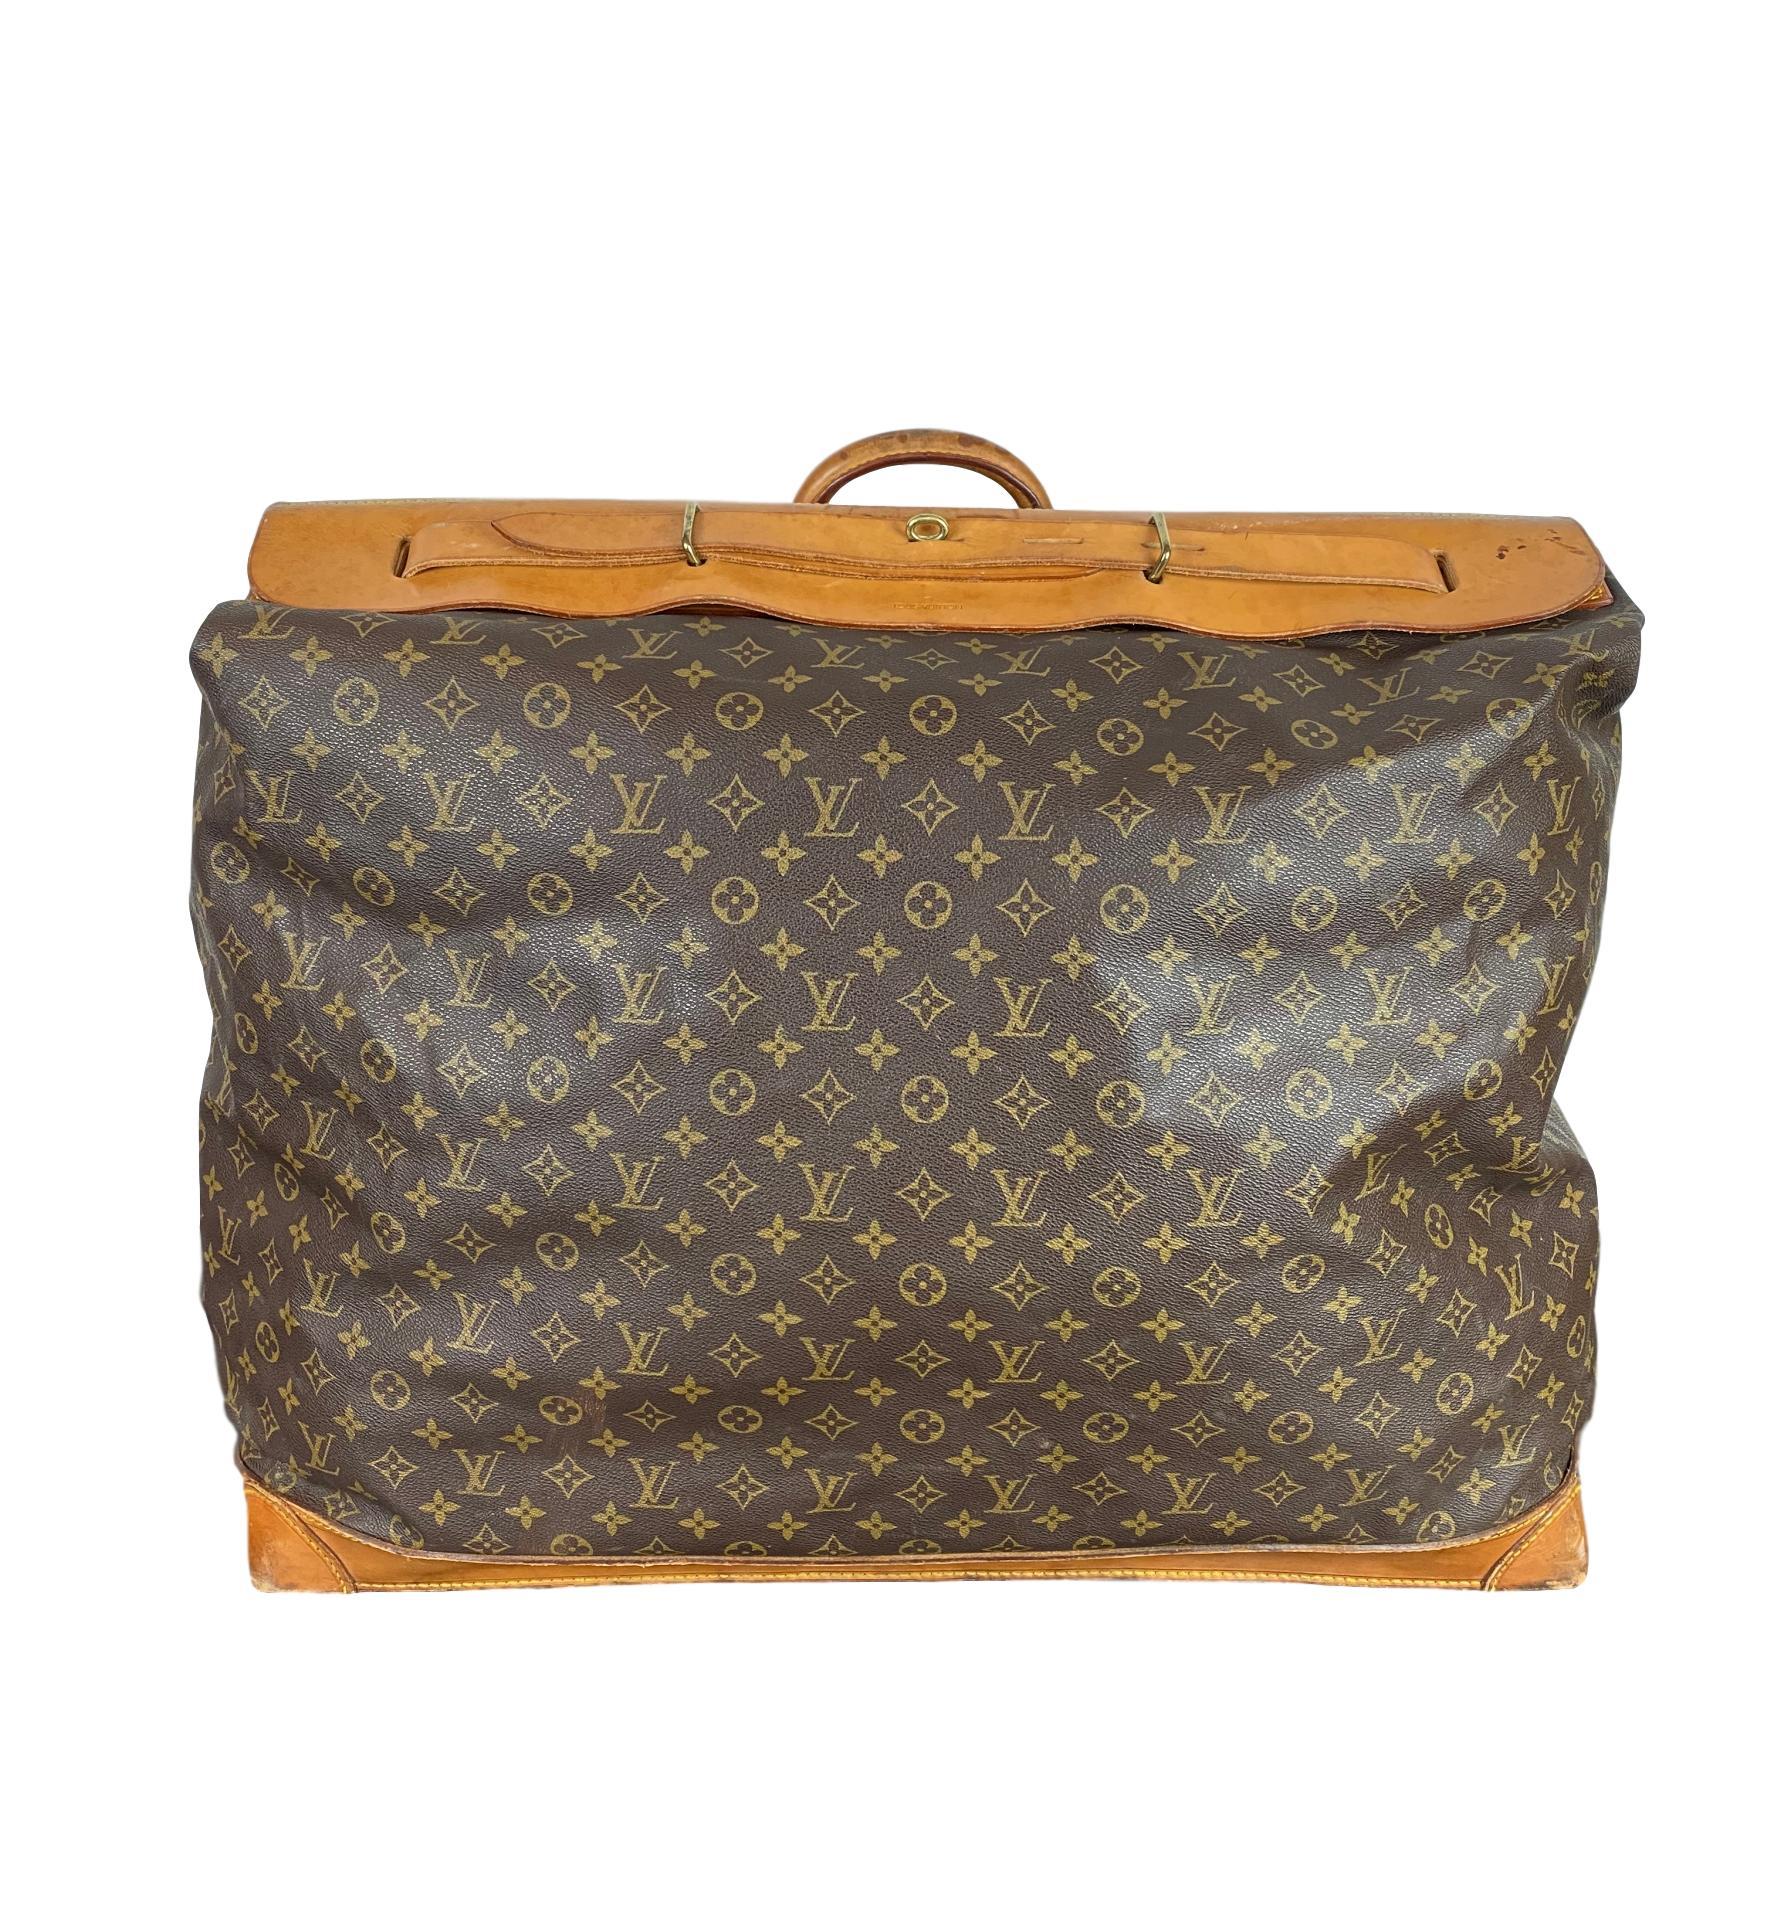 Vintage Louis Vuitton Large Monogram Steamer Travel Bag 55:: Frankreich 1991. Diese Vintage-Tasche besteht aus dem klassischen Louis Vuitton Monogram Canvas mit gerollten Vachetta-Griffschlaufen und eignet sich sowohl für Männer als auch für Frauen